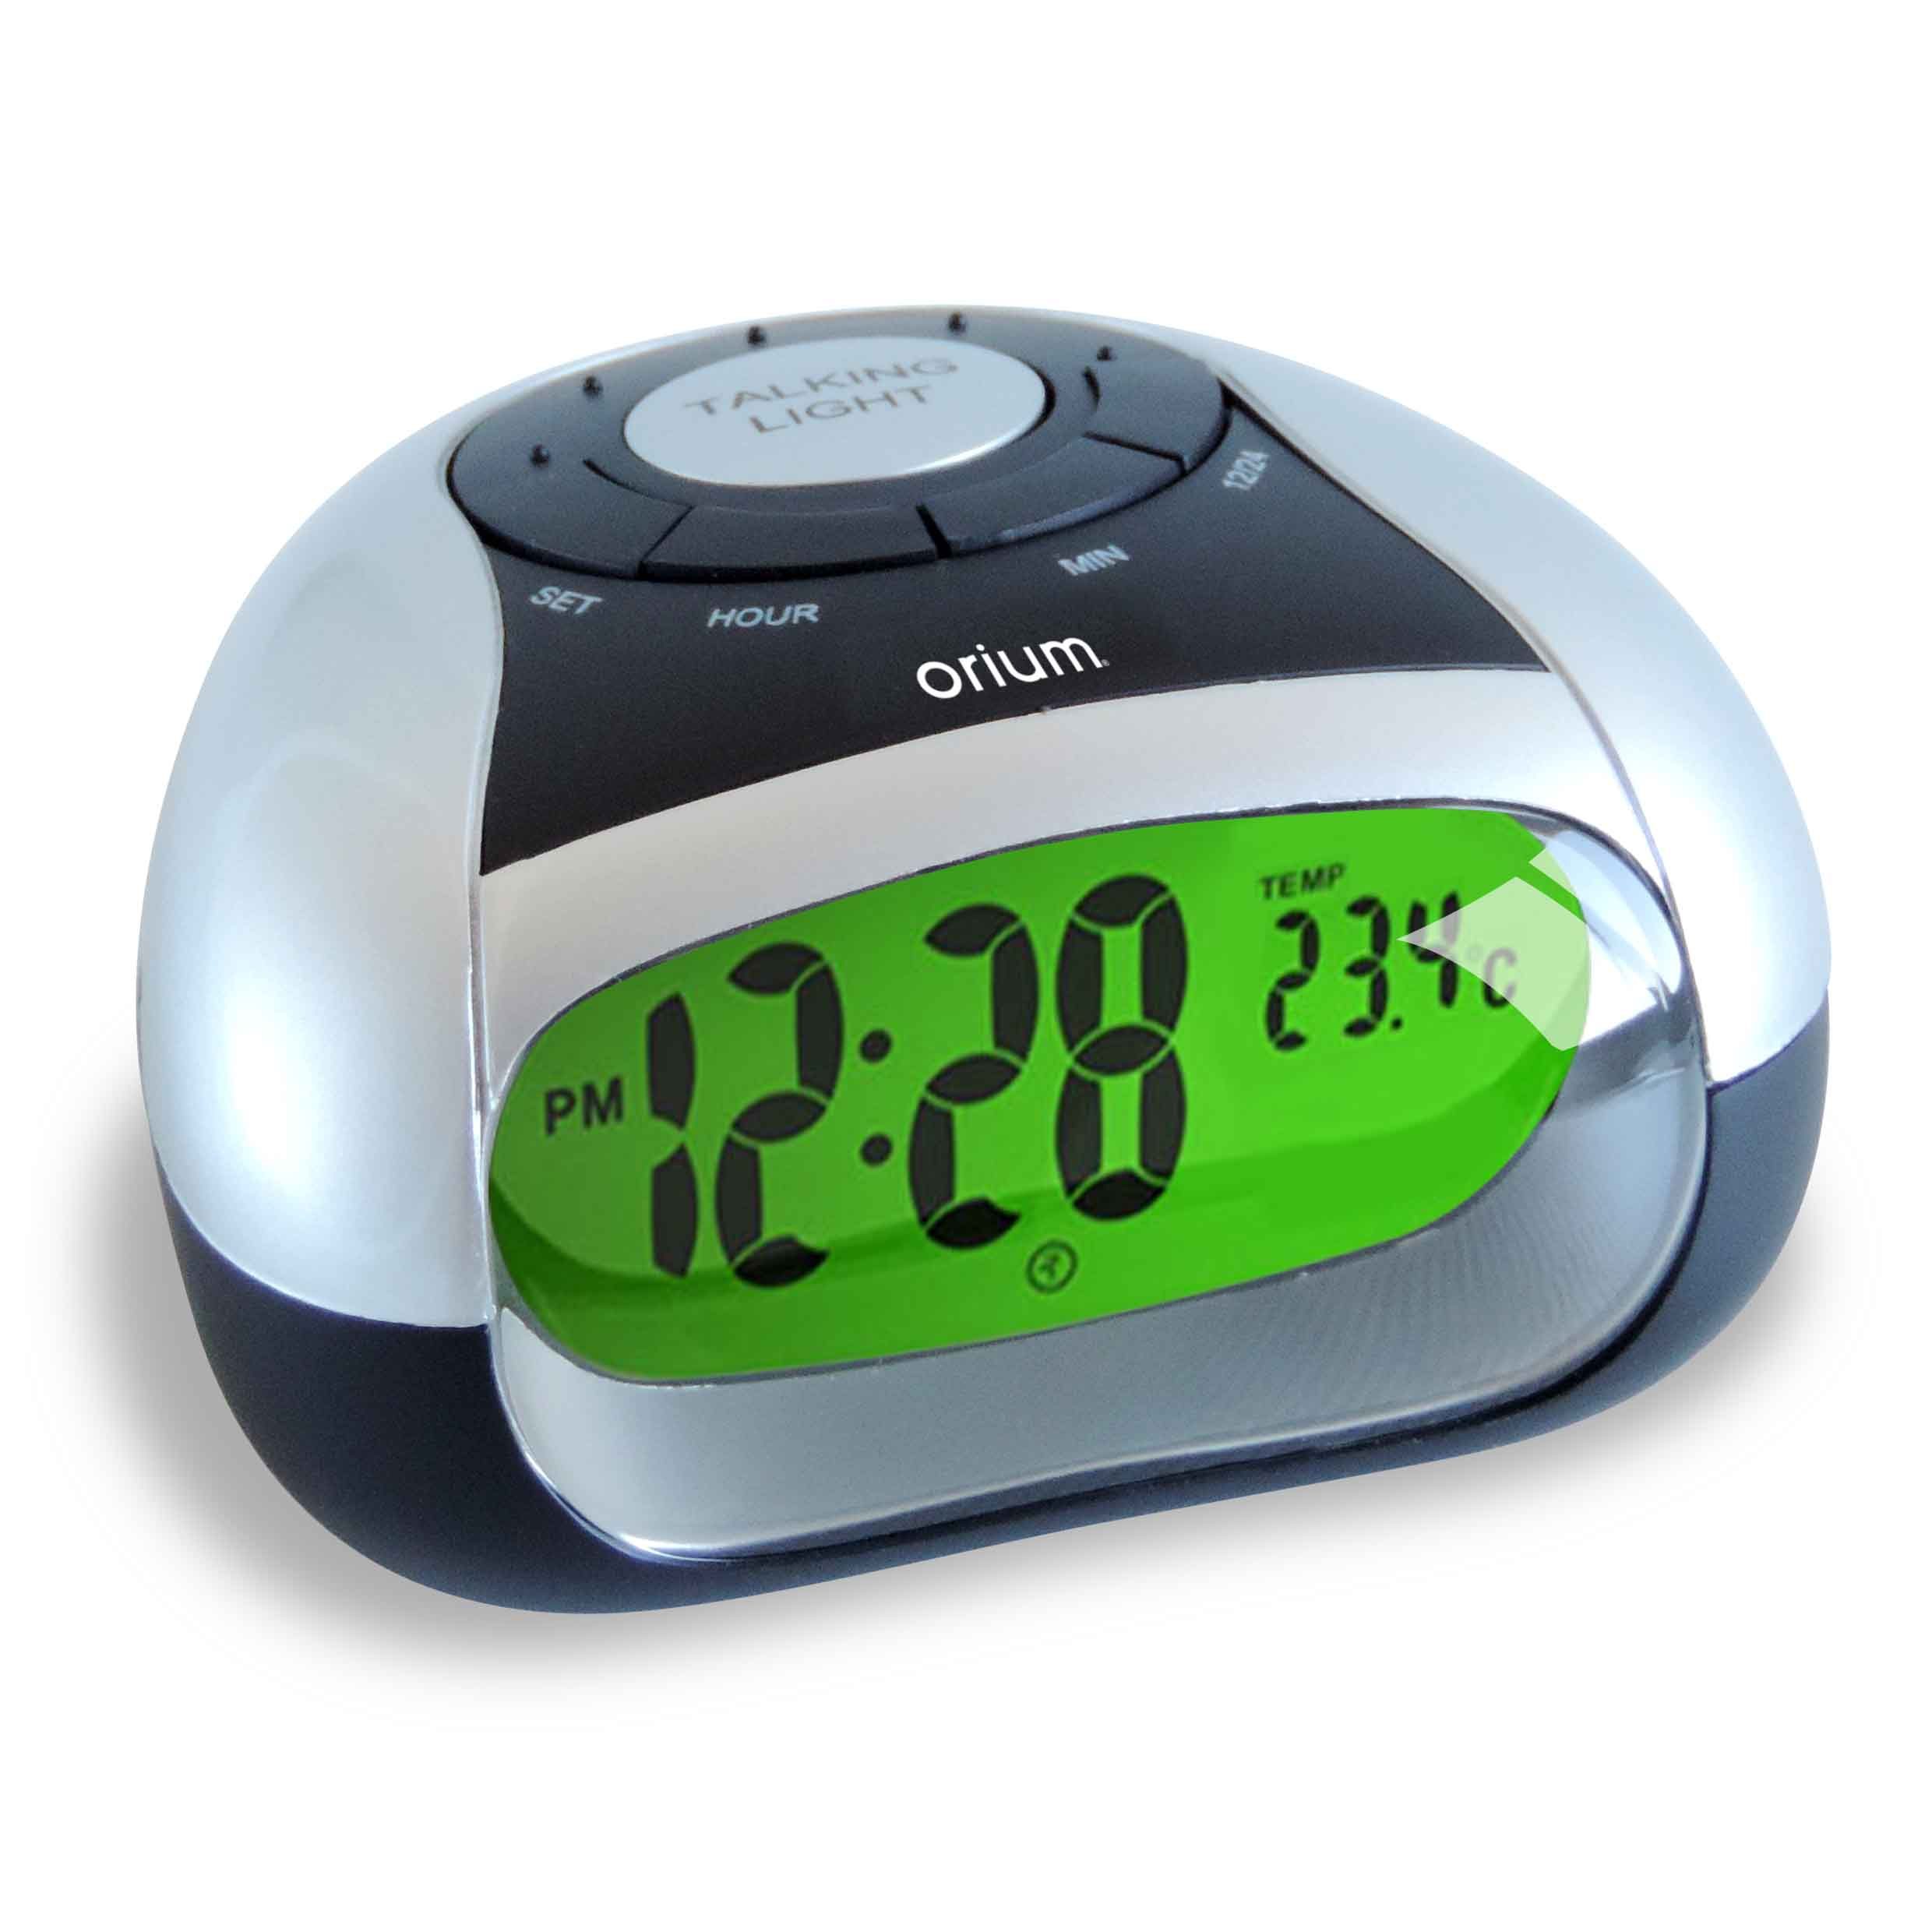 Говорящие часы настольные. Говорящие часы с термометром. Говорящие часы с будильником и термометром. Reveil Alarm Clock. Часы VST 770t-1.